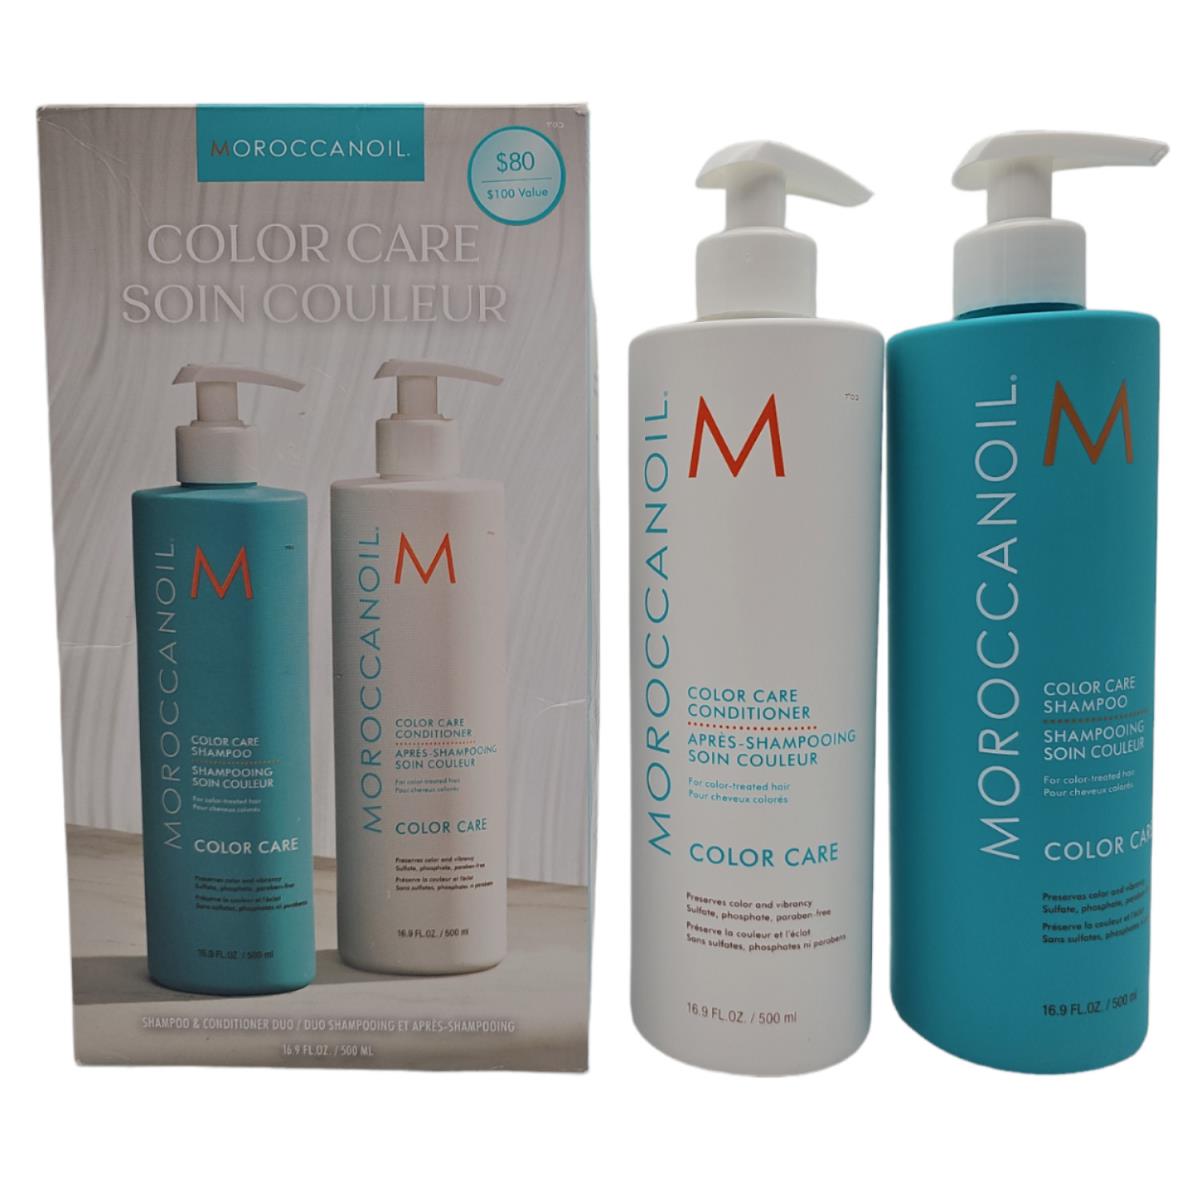 Moroccanoil Color Care Shampoo Conditioner Duo 16.9 oz - Value